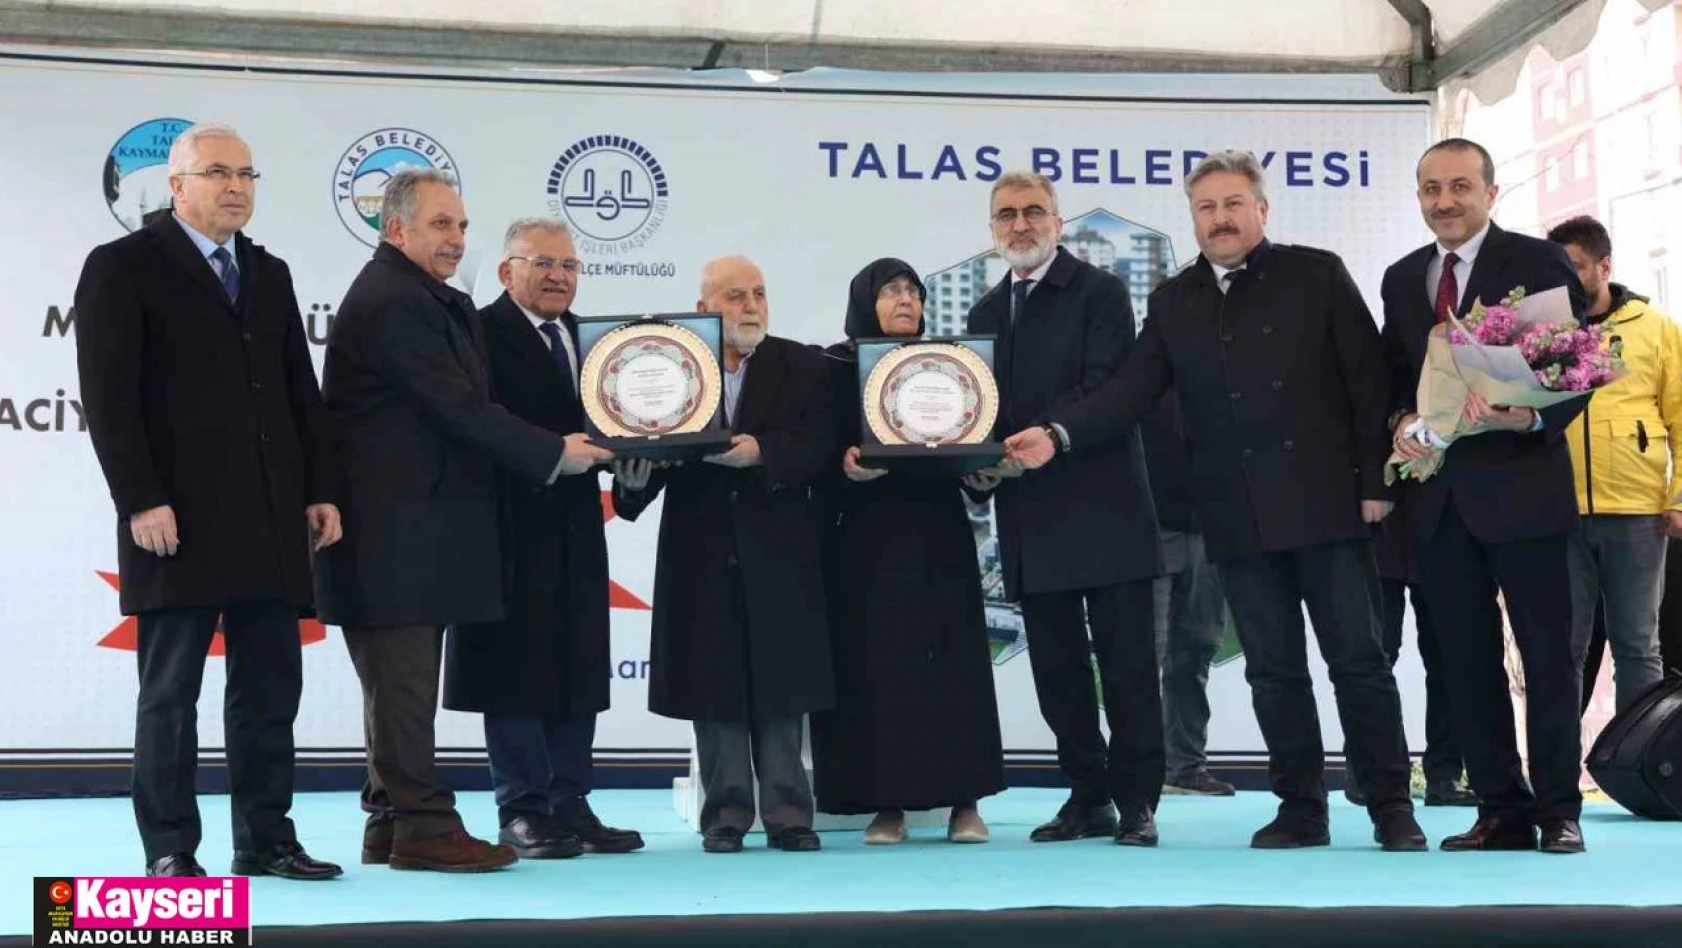 Talas Büyükperdah Camii'nin açılışı gerçekleşti